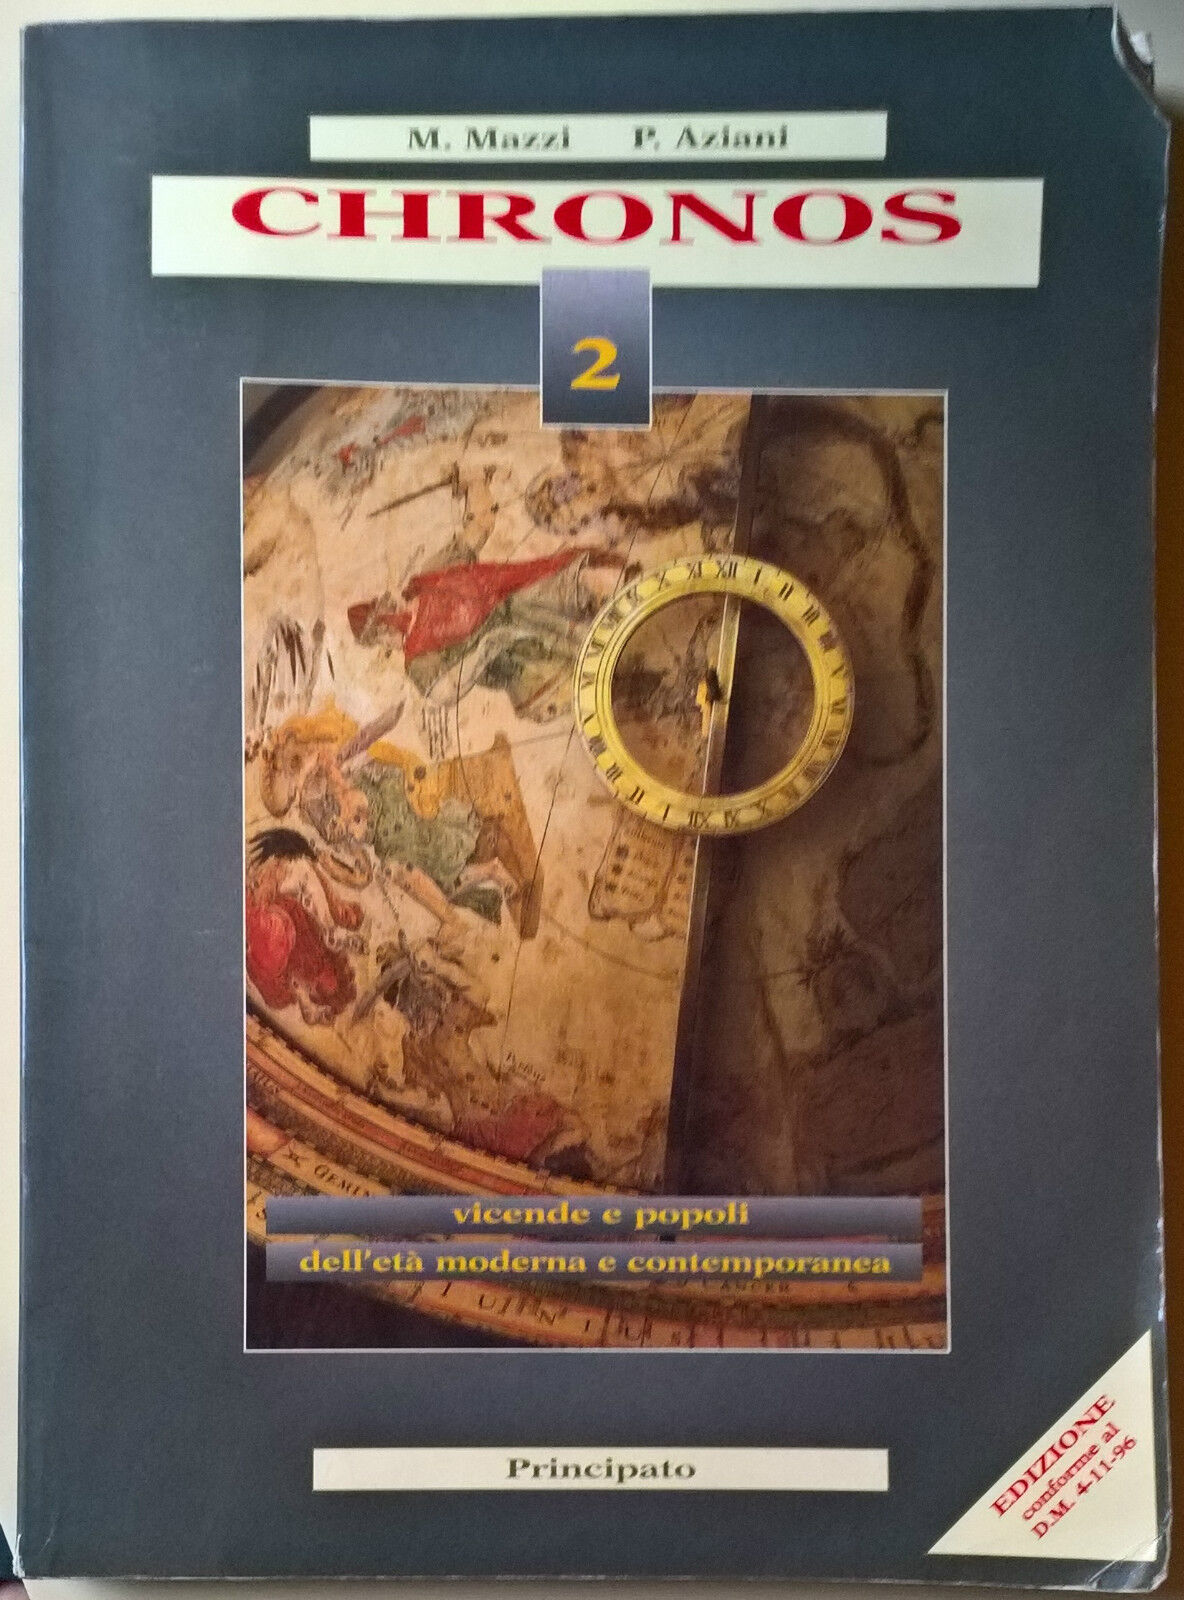 Chronos Vol. 2 - M. Mazzi, P. Aziani - 1997, Principato - L